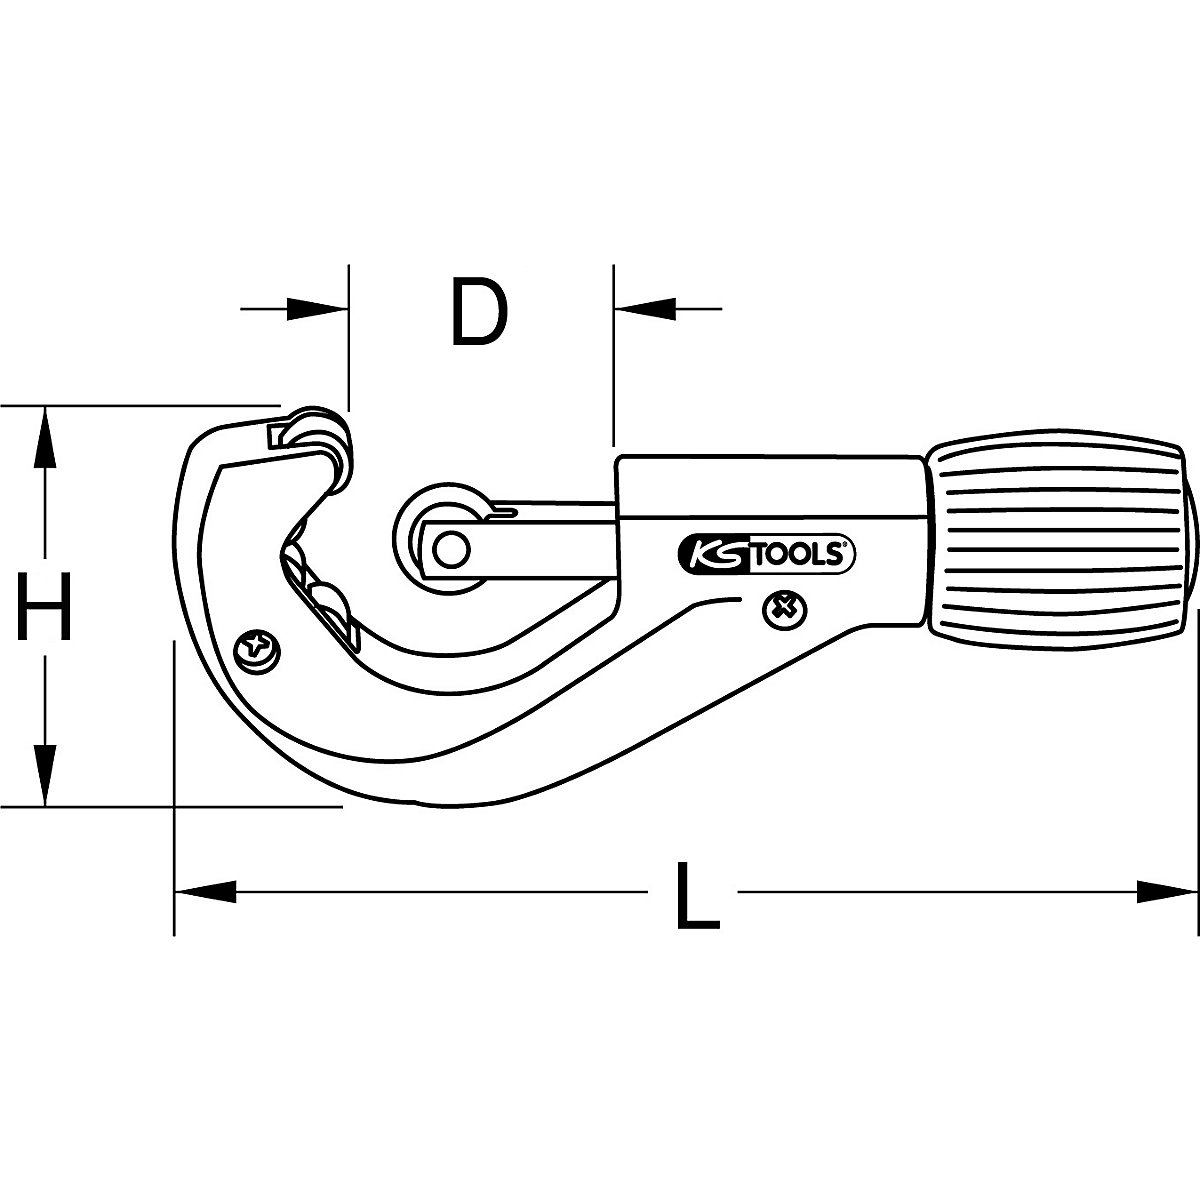 Teleskopowy obcinak do rur – KS Tools (Zdjęcie produktu 5)-4